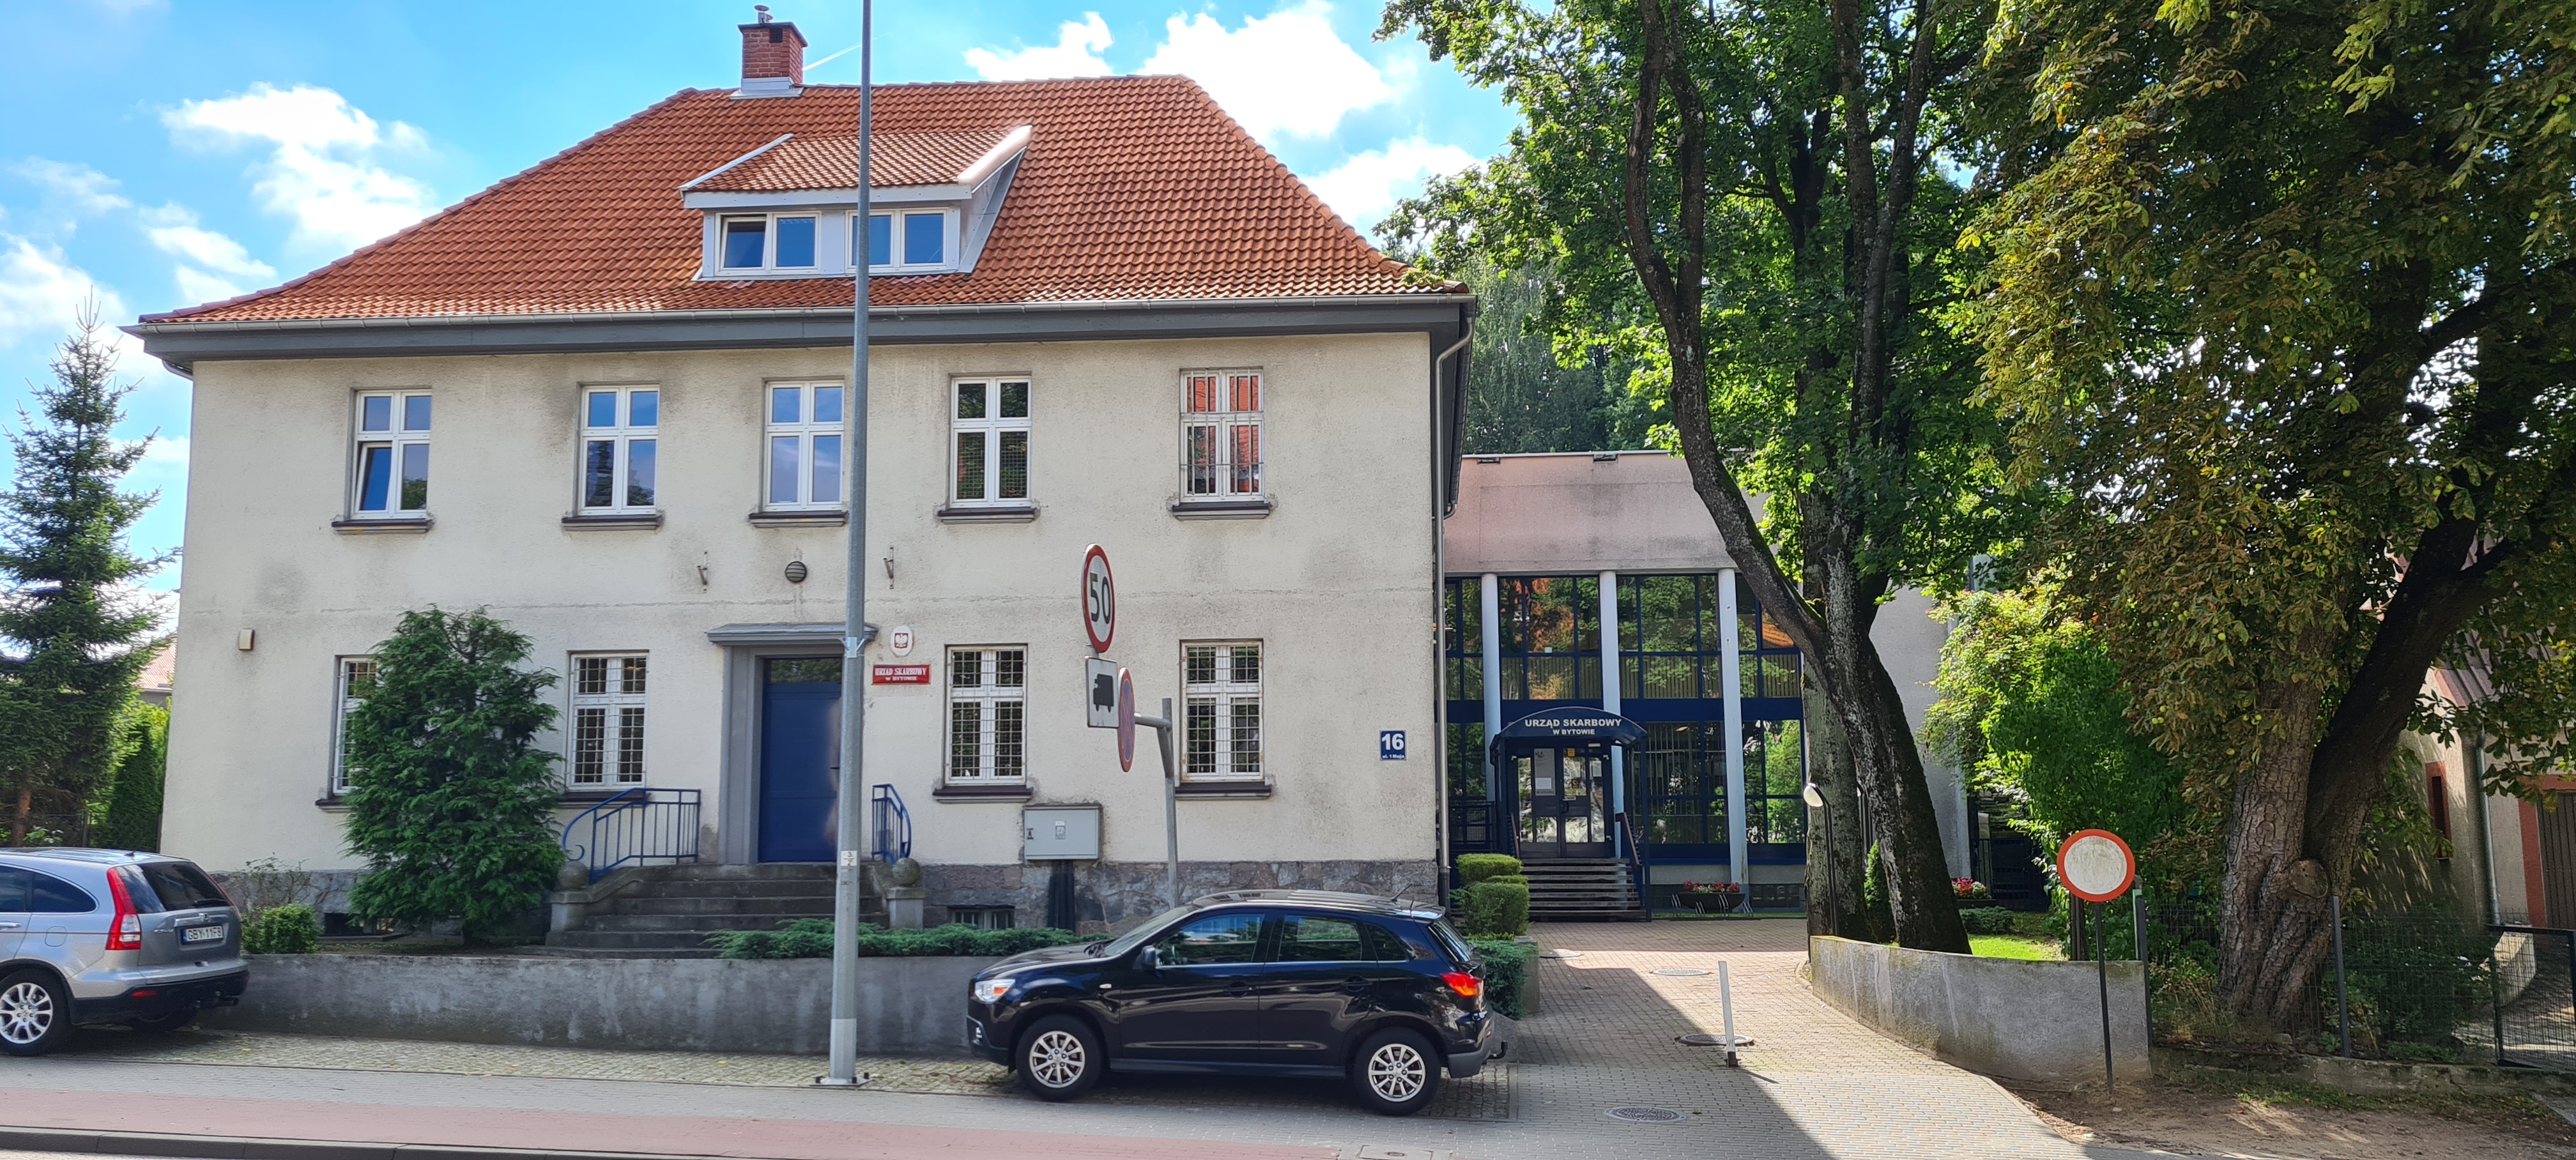 Budynek o jasnej elewacji z czerwonym dachem, w którym znajduje się siedziba Urzędu Skarbowego w Bytowie